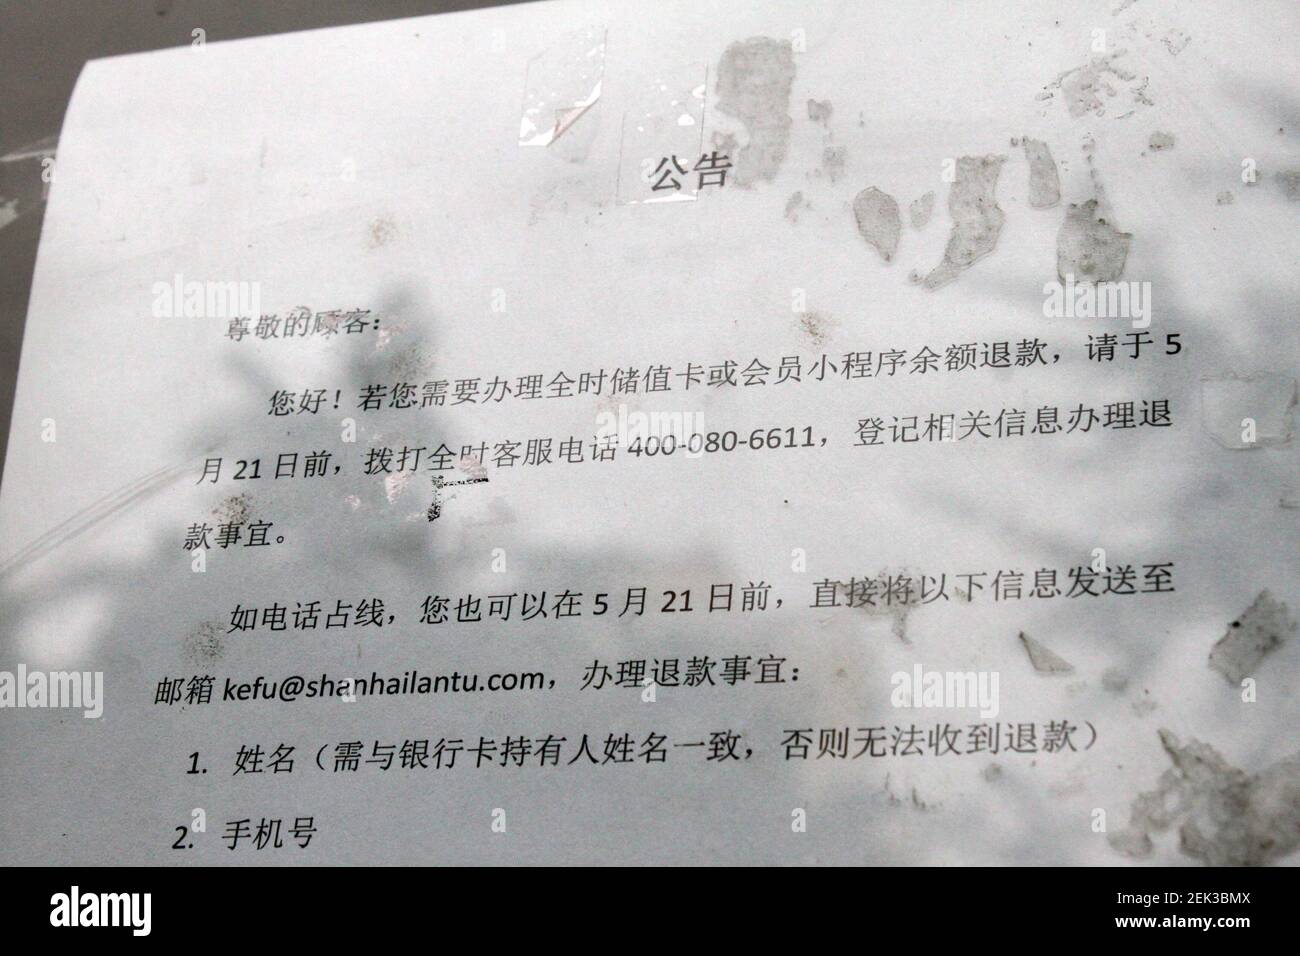 Beijingï¼ŒCHINA-am 17. Mai 2020 wurde ein Vollzeitgeschäft an der  Nordstraße der westlichen dritten Ringstraße in Peking für Kunden gesperrt,  auf dem Glas waren Schilder wie "Verstellung bitte freuen Sie sich auf"  angebracht.